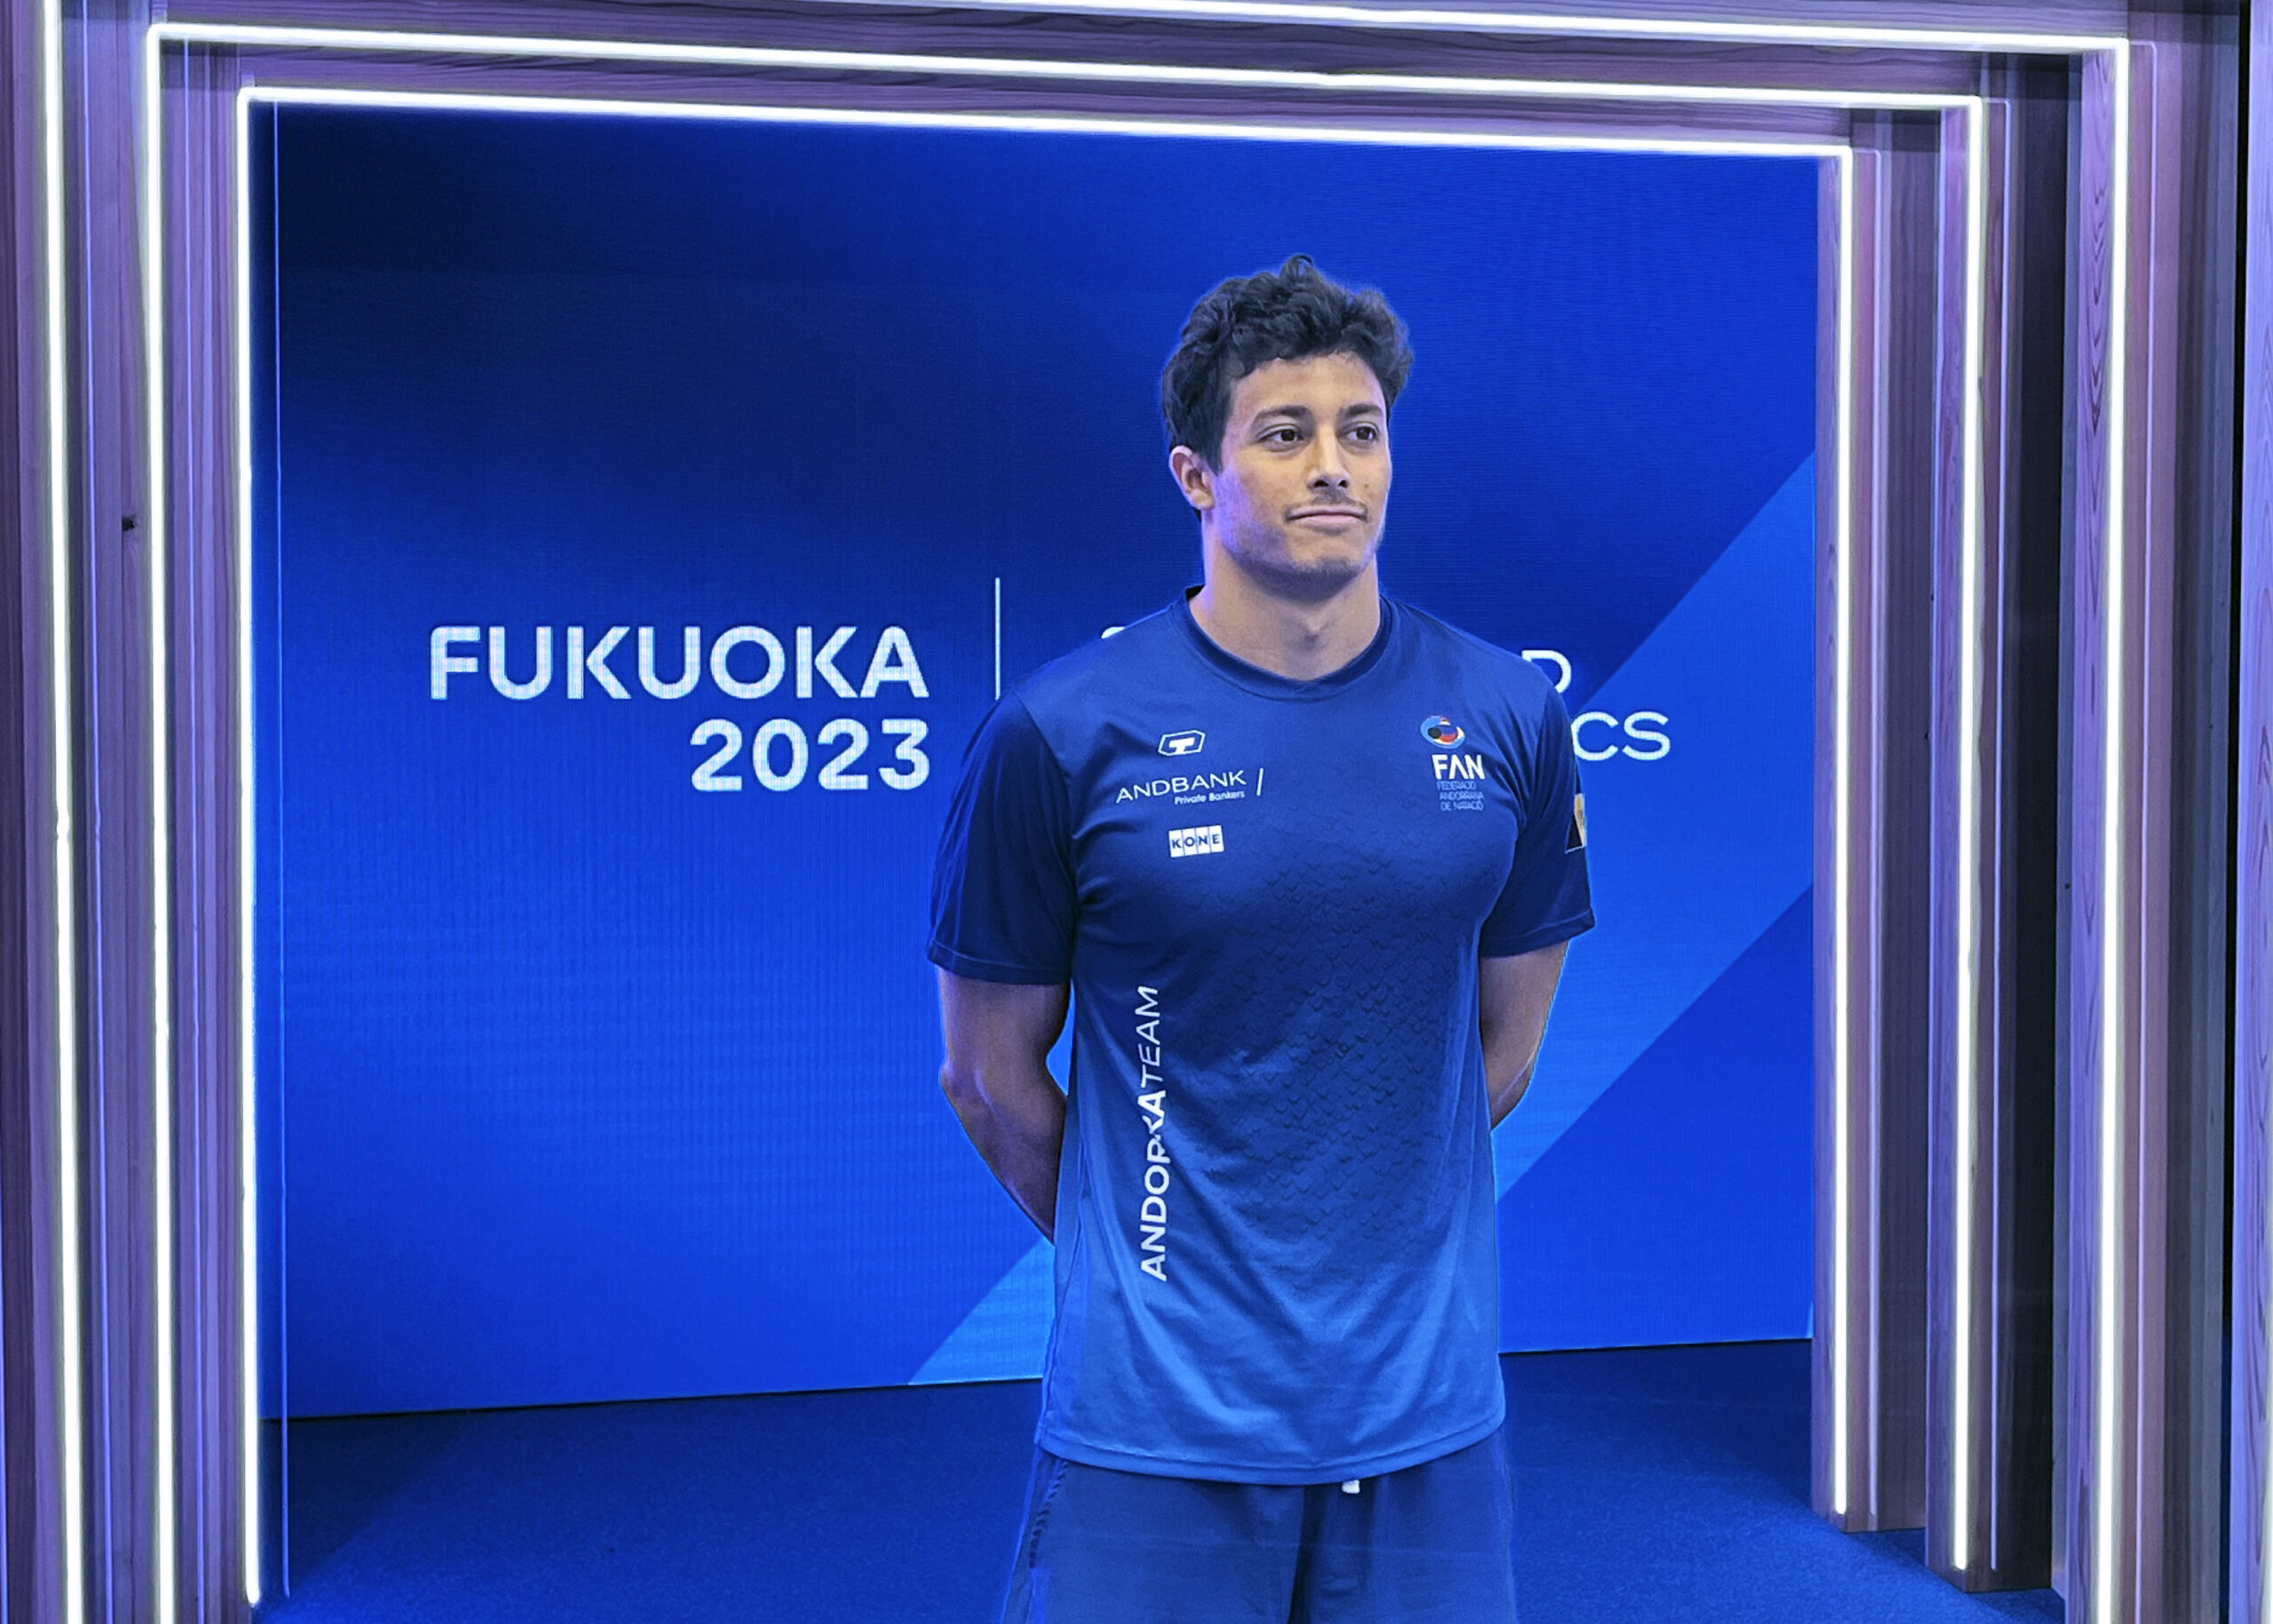 Tomàs Lomero als Campionats del Món de Natació a Fukoka, Japó / FAN